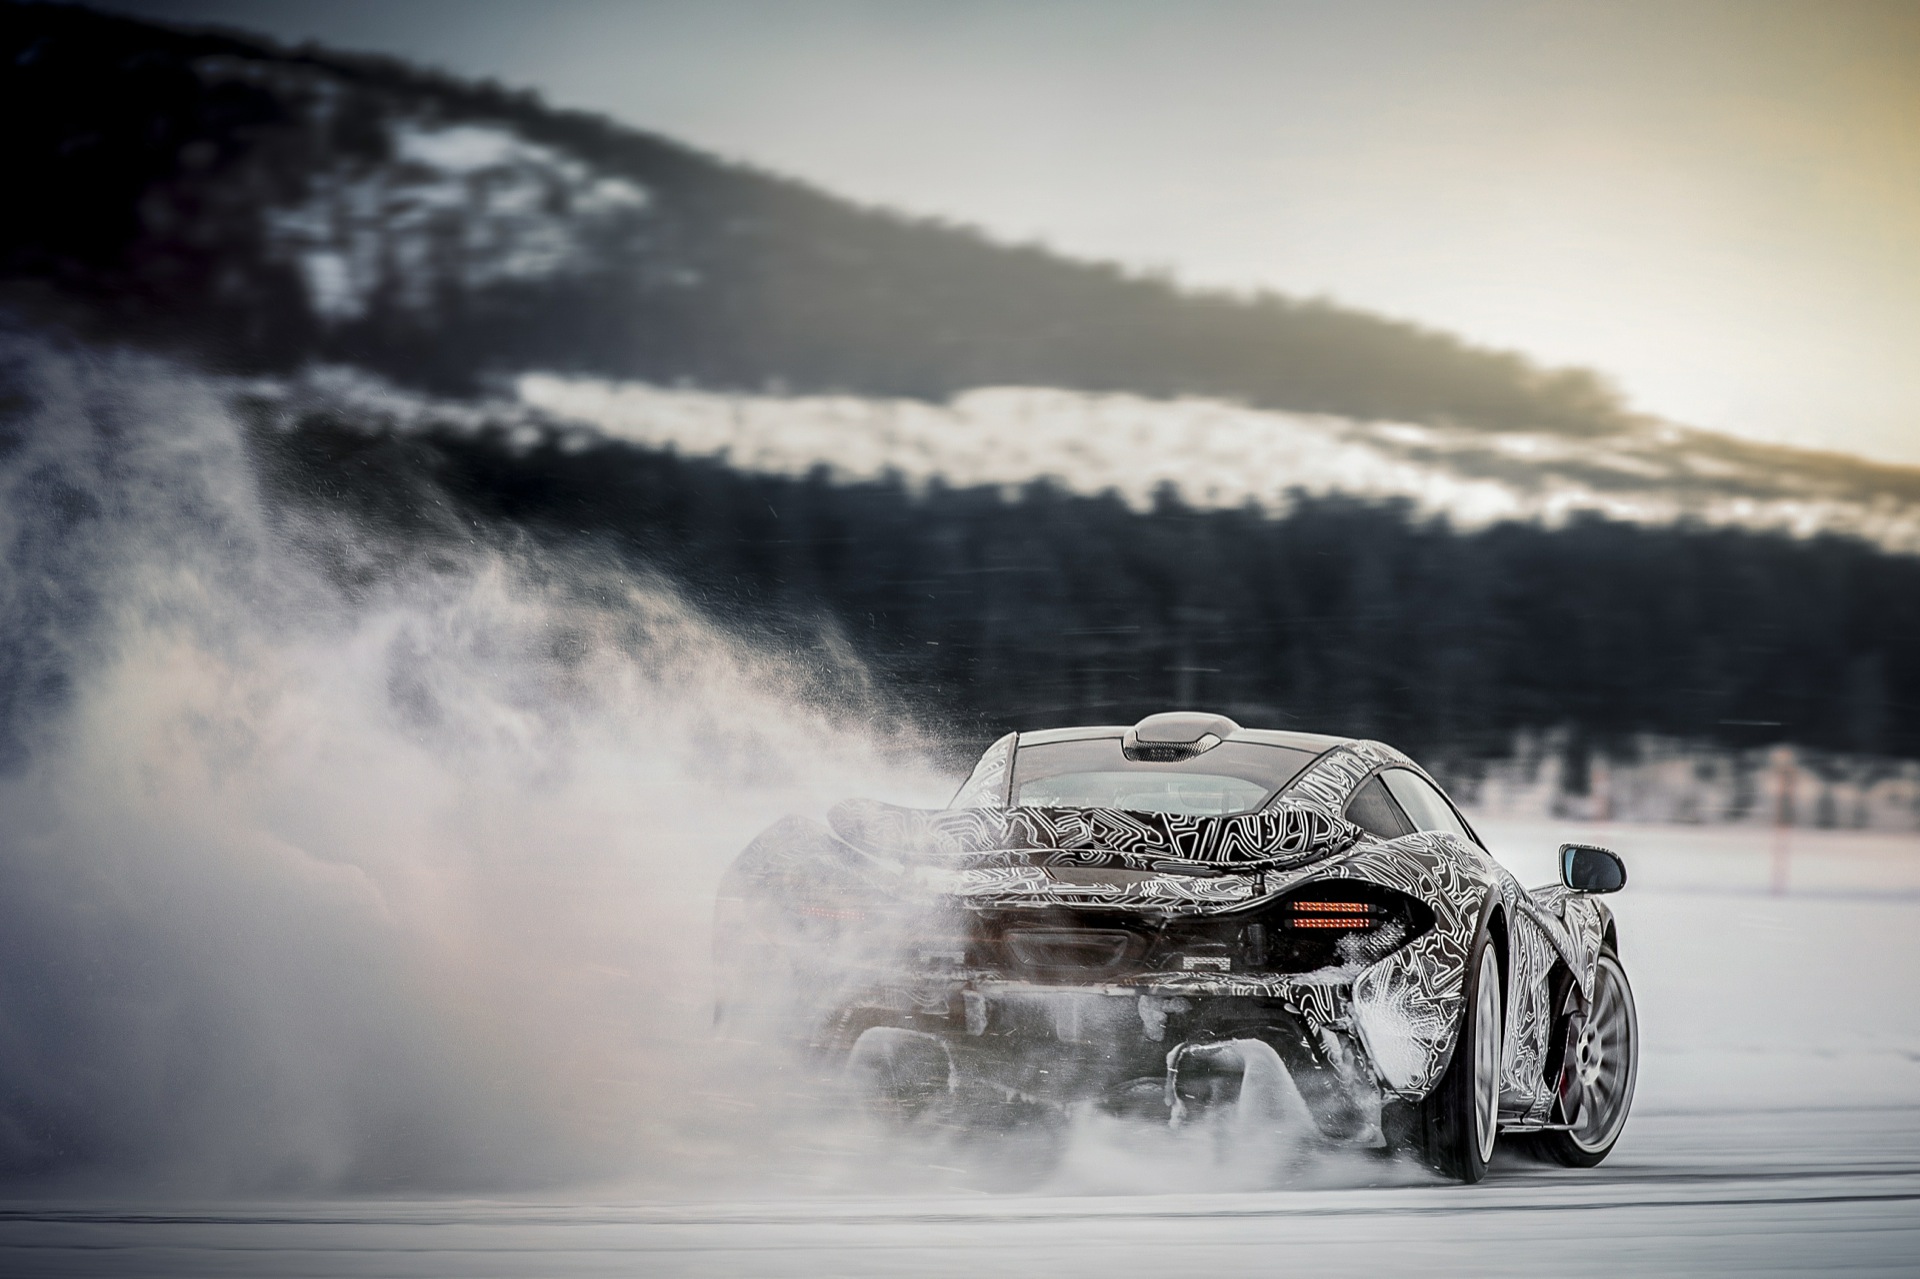 McLaren P1 Winter Testing in Arjeplog Sweden 2013